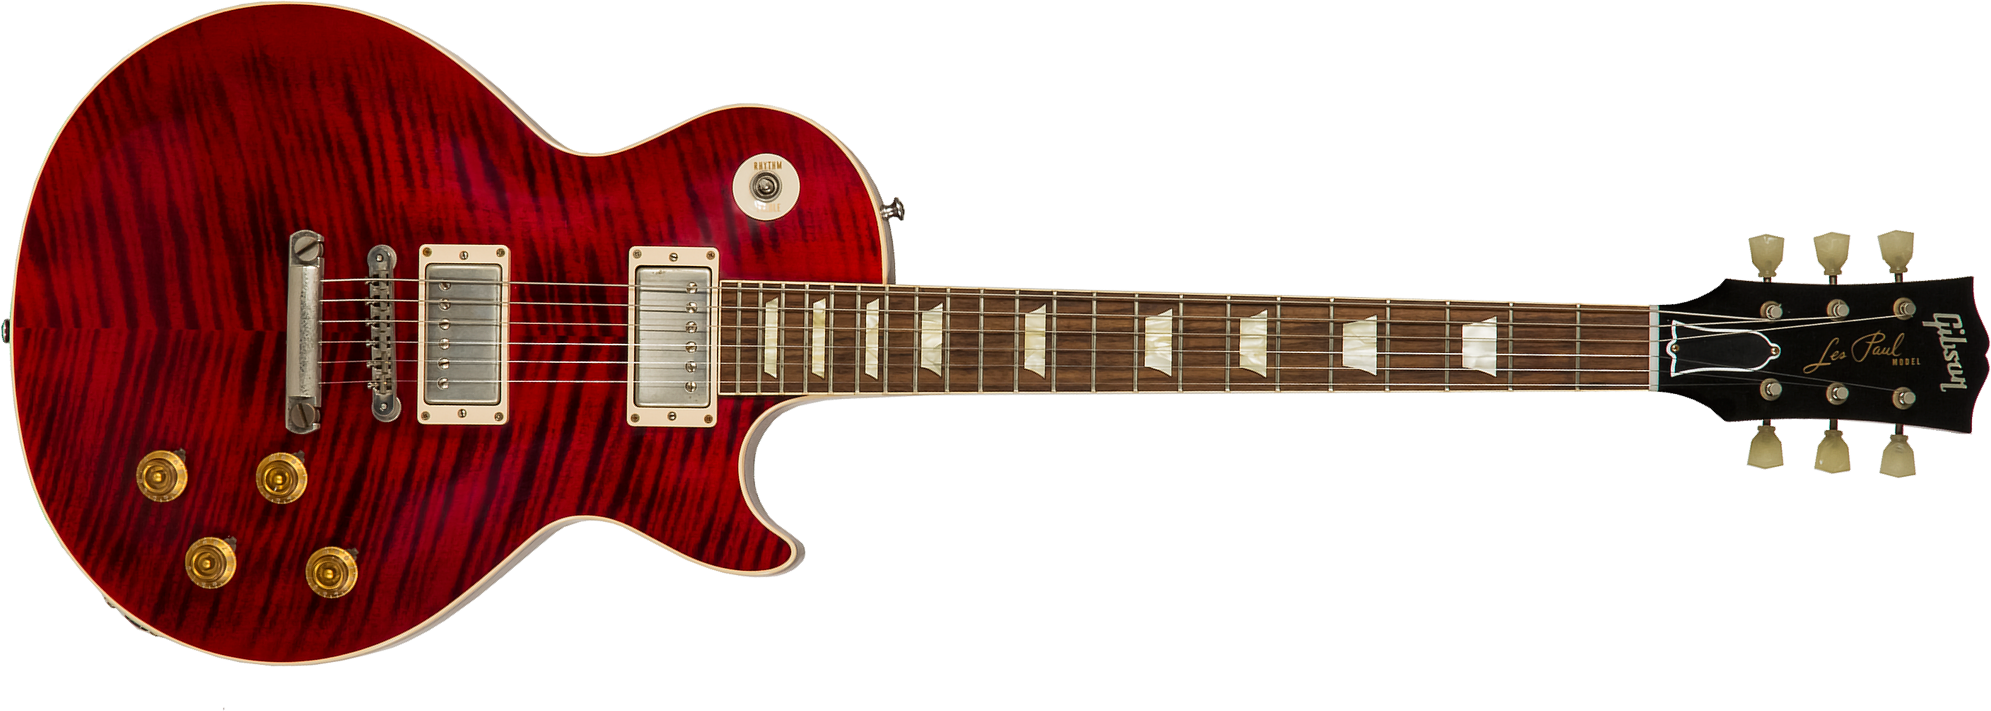 Gibson Custom Shop M2m Les Paul Standard 1959 Reissue 2h Ht Rw #943147 - Vos Red Tiger - Guitarra eléctrica de corte único. - Main picture